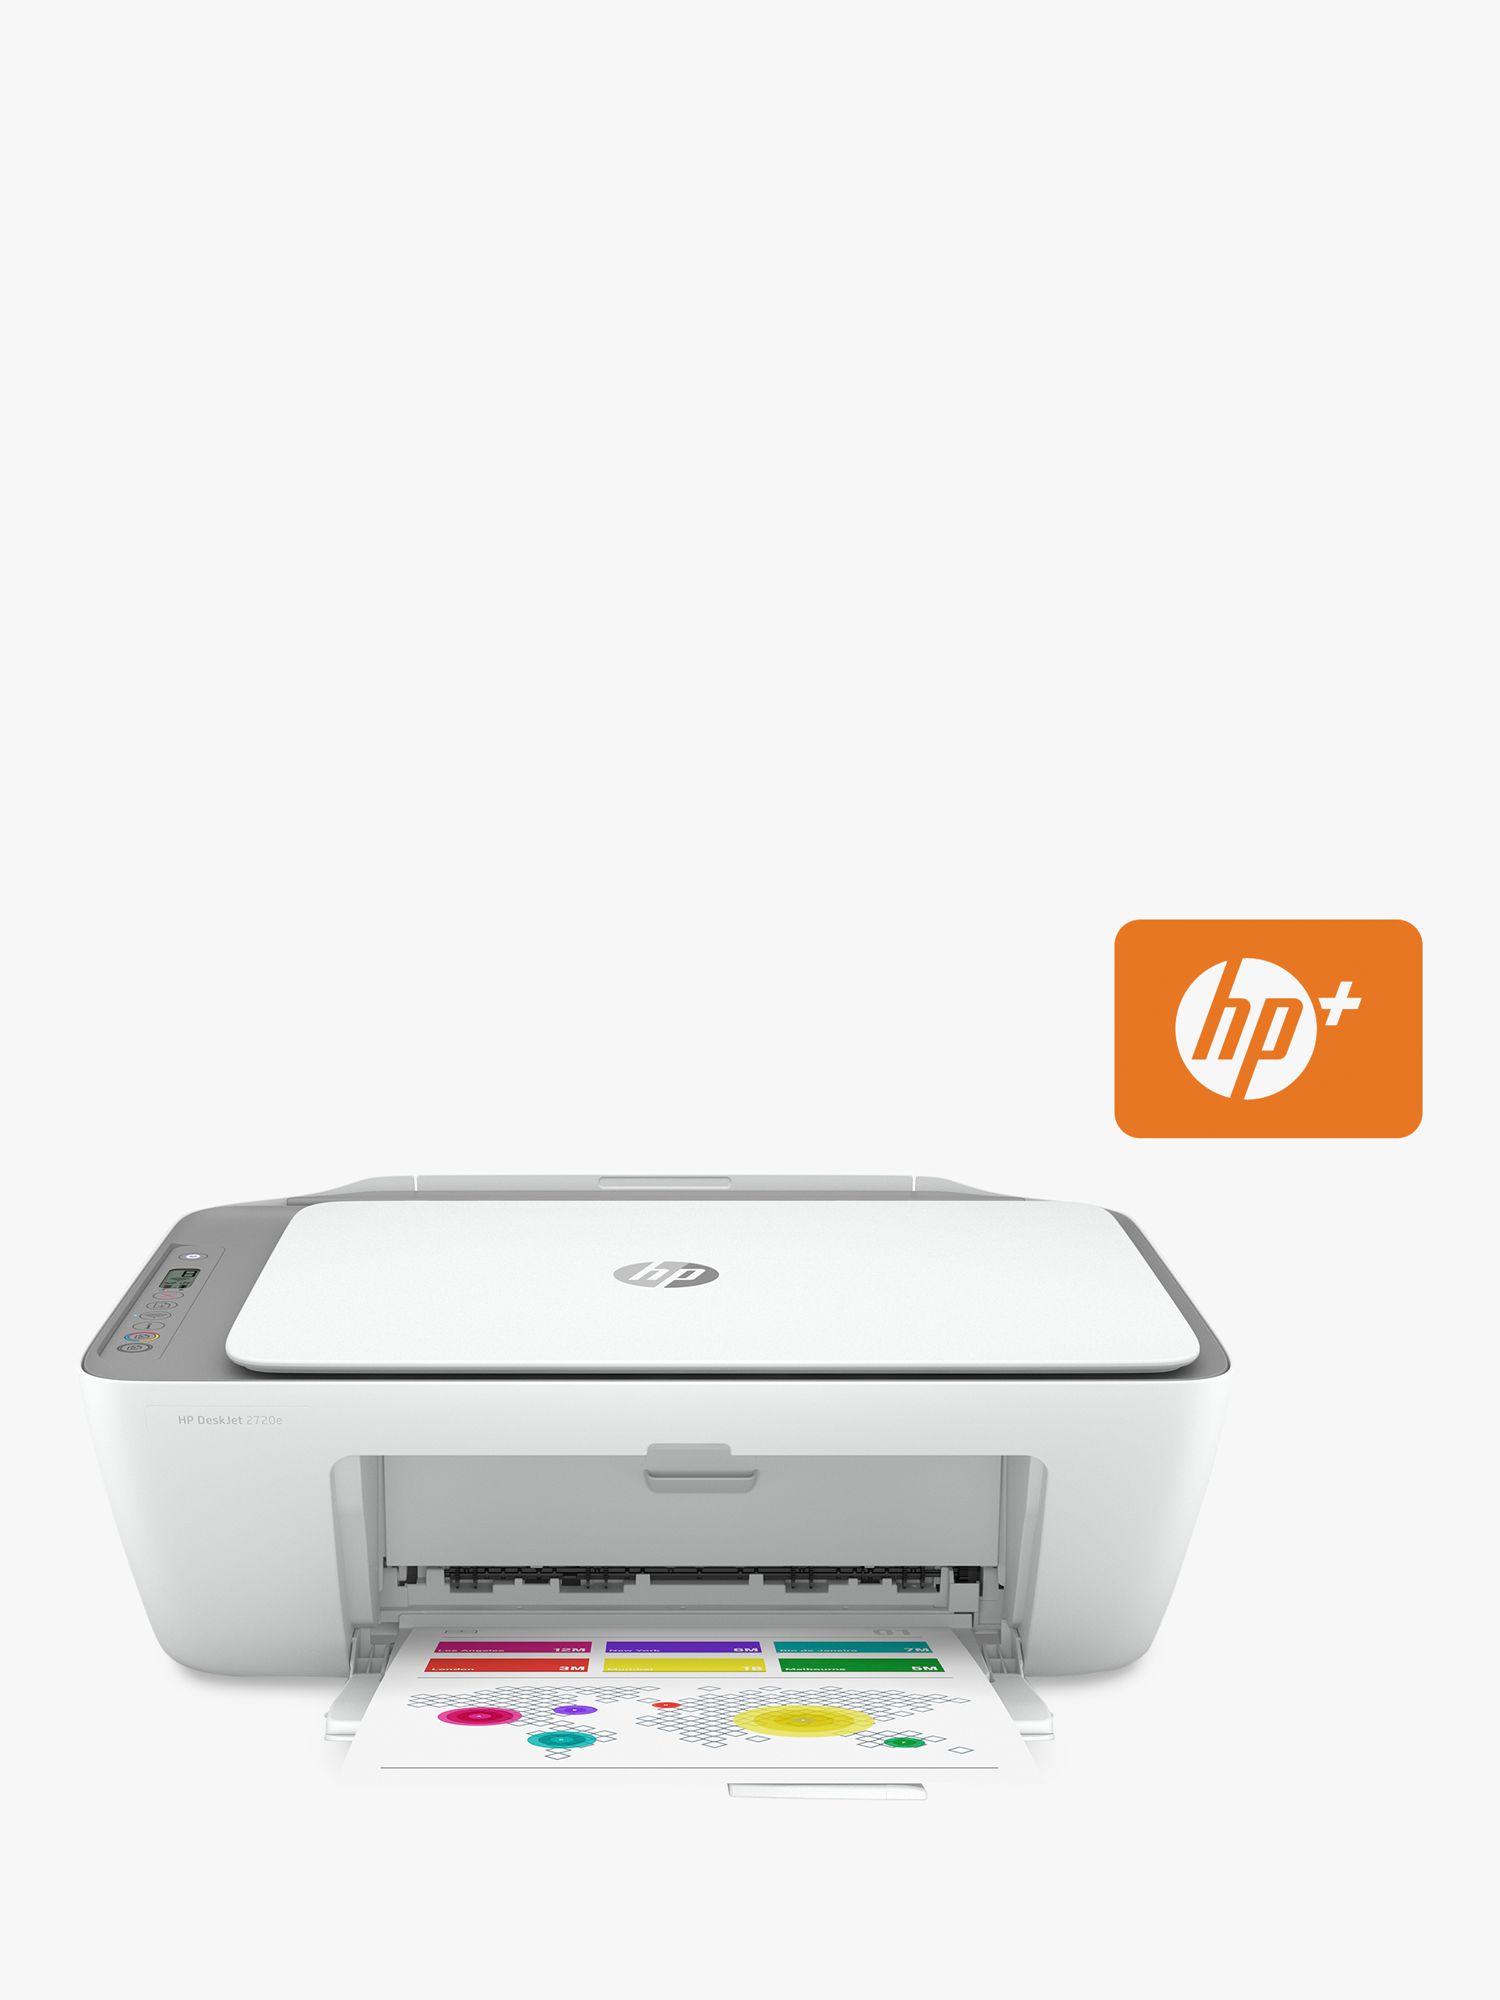 Stampante HP DeskJet 2720e con Wi-Fi: -31% WOW